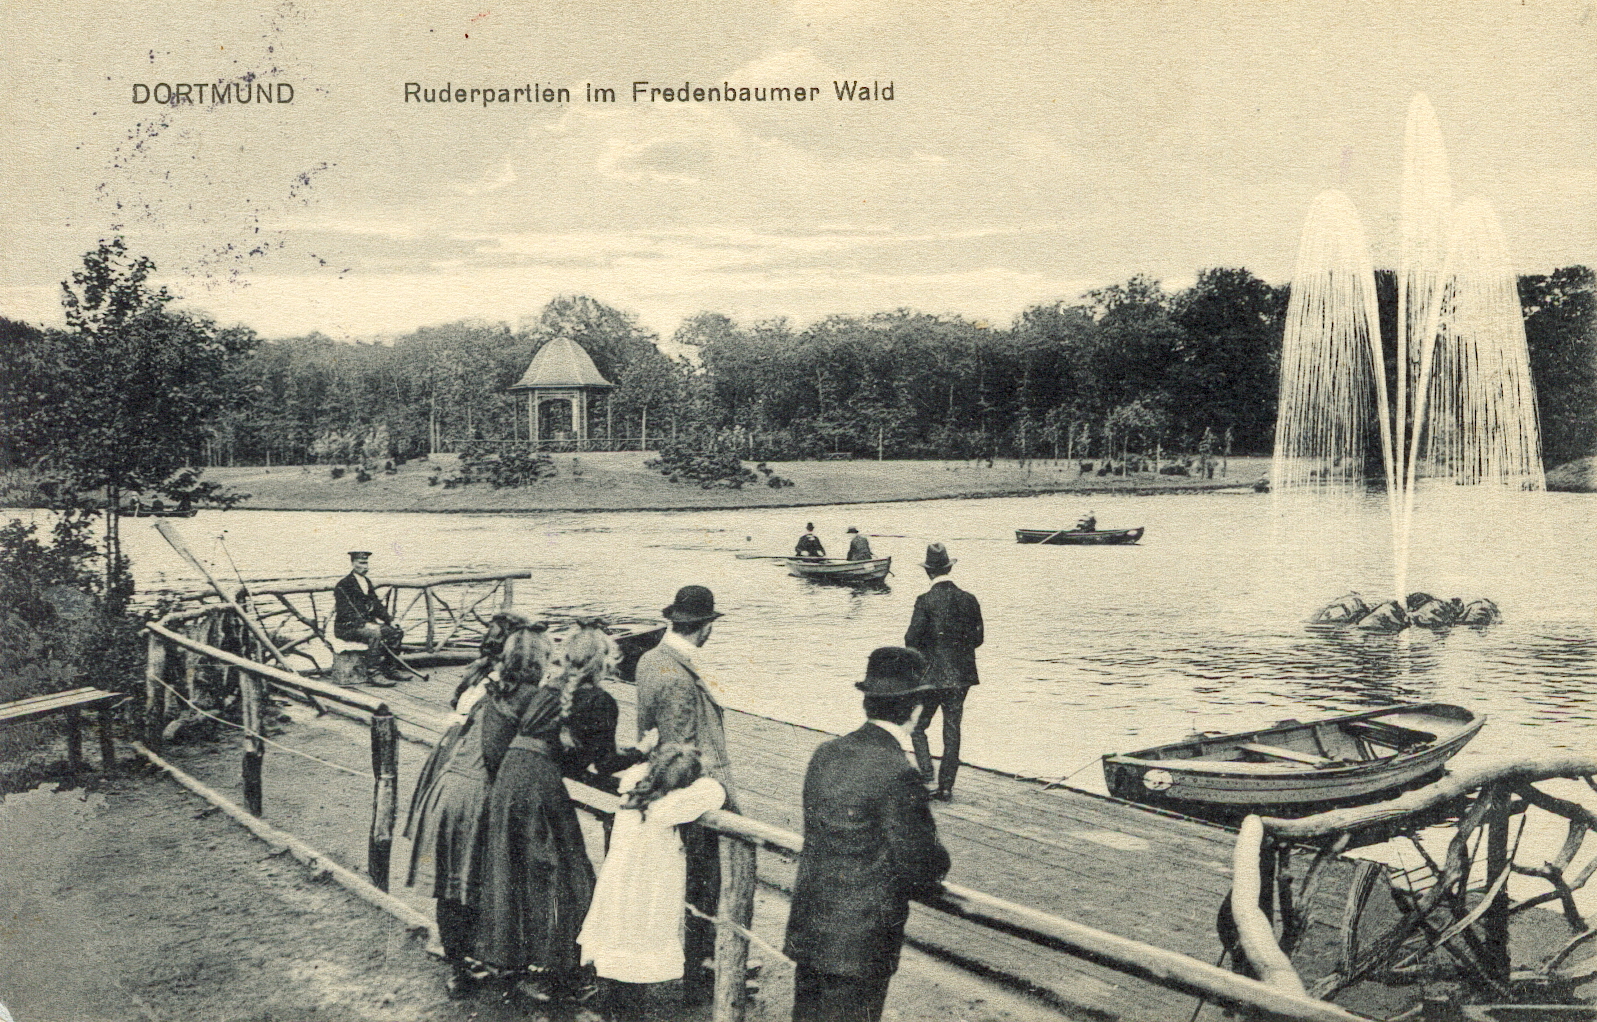 Das historische Foto zeigt eine Ruderpartie im Fredenbaumpark im Jahr 1913.